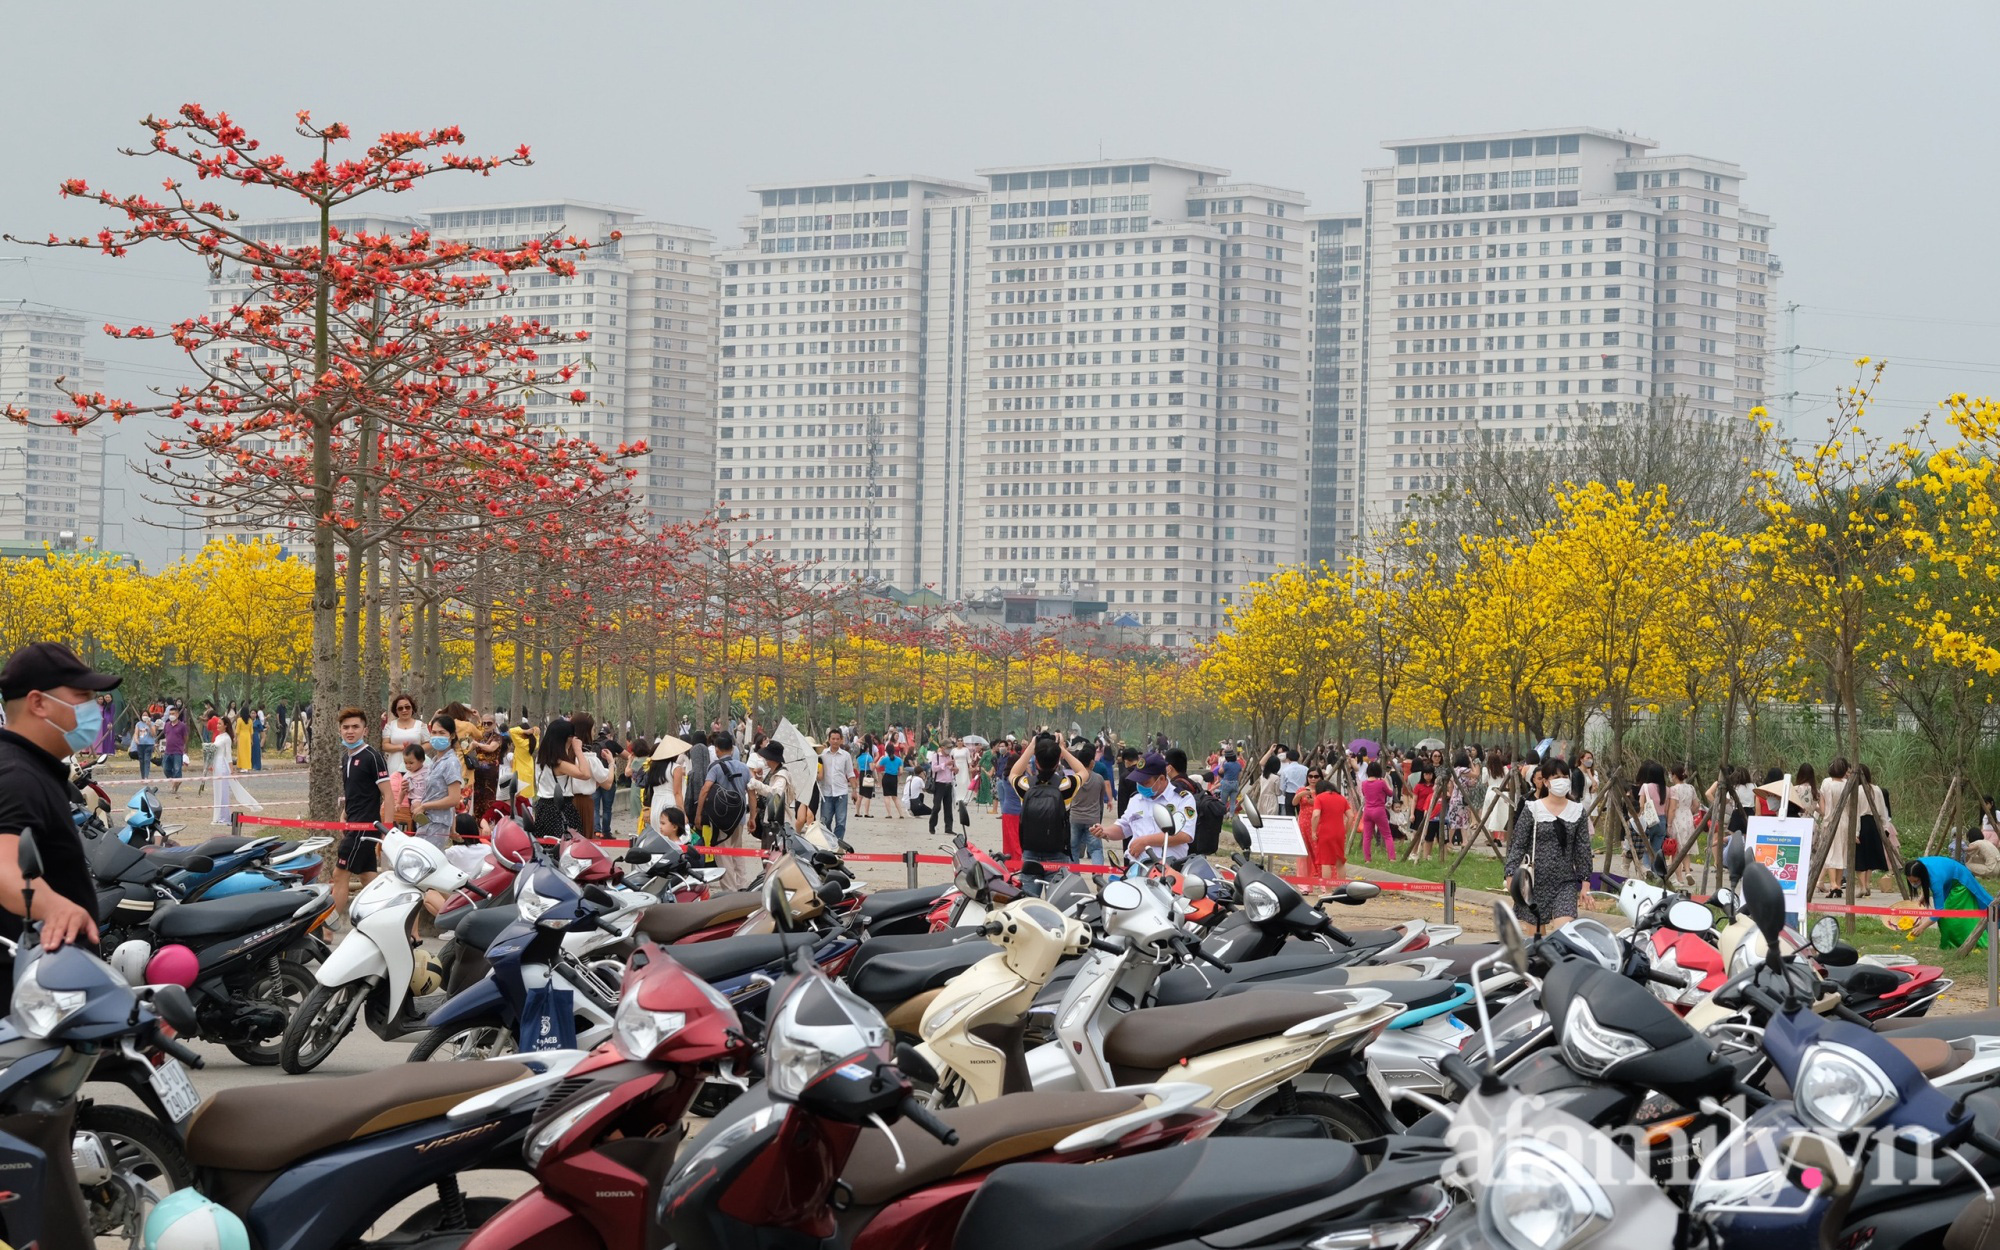 Hà Nội: Hàng nghìn người đổ xô đi chụp ảnh ở đường hoa phong linh, chỗ để xe "thất thủ" - cảnh giác bảo vệ tài sản